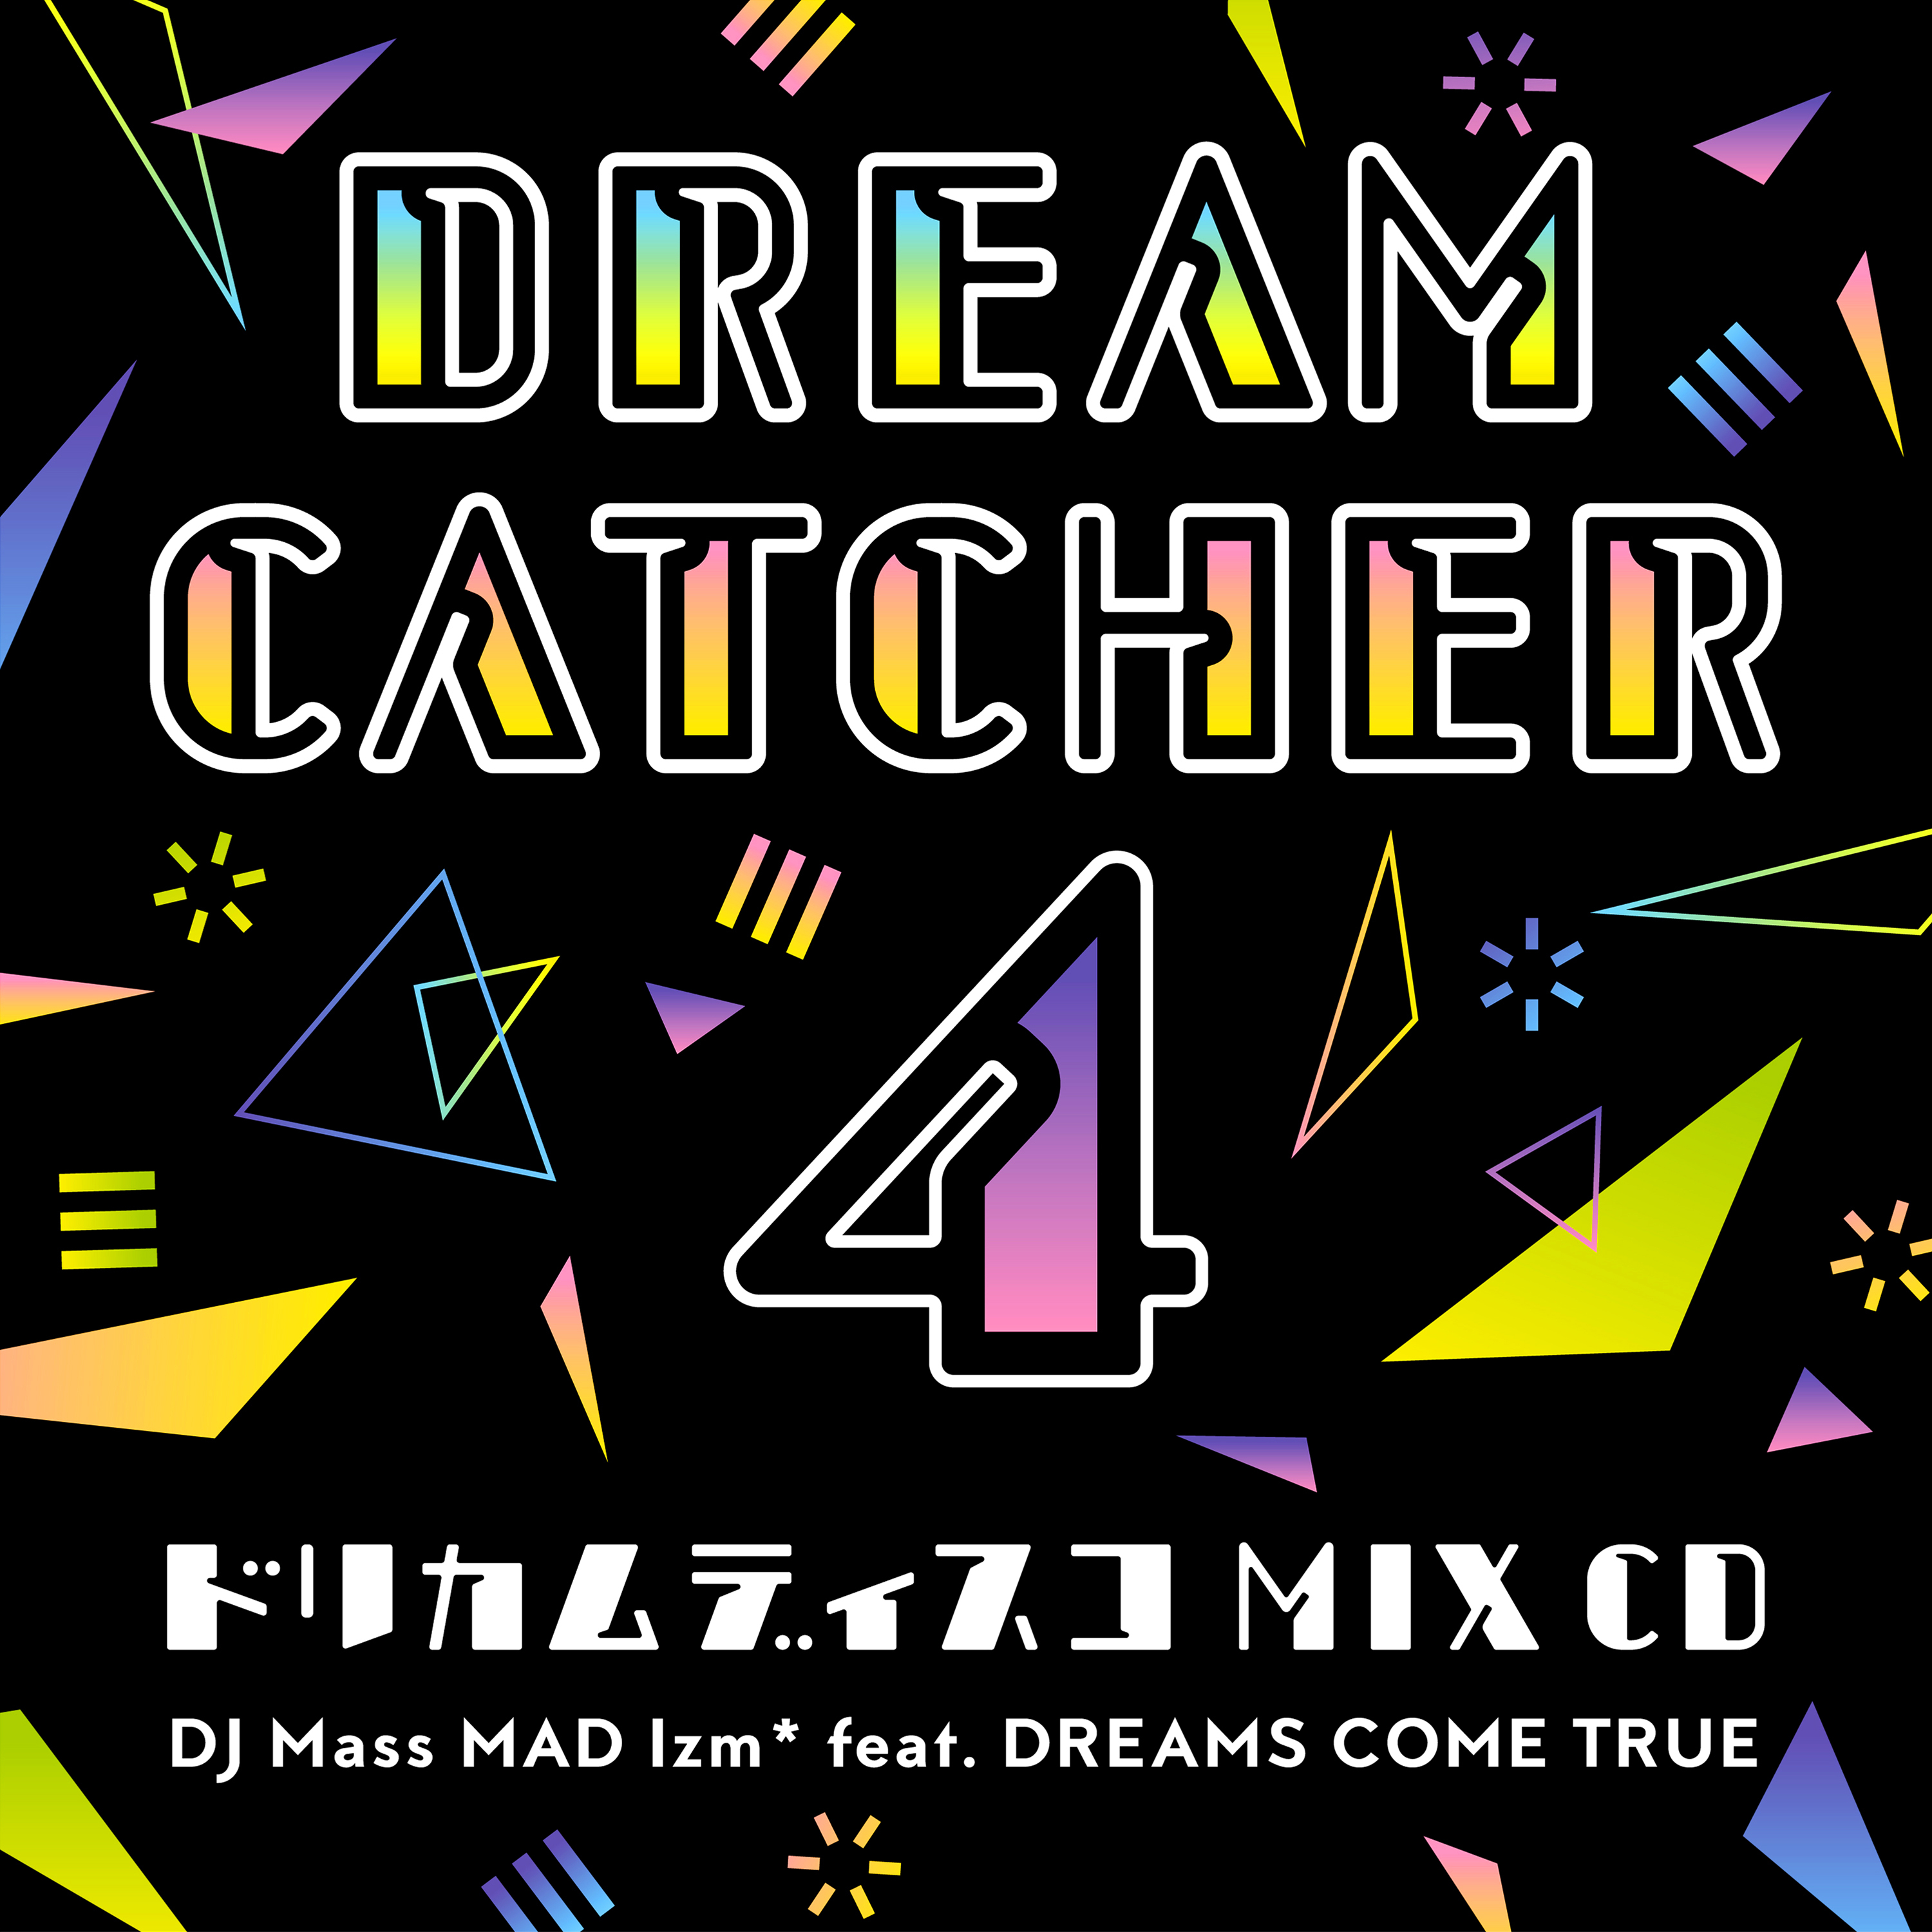 DREAM CATCHER 4 – ドリカムディスコ MIX CD - - DREAMS COME TRUE